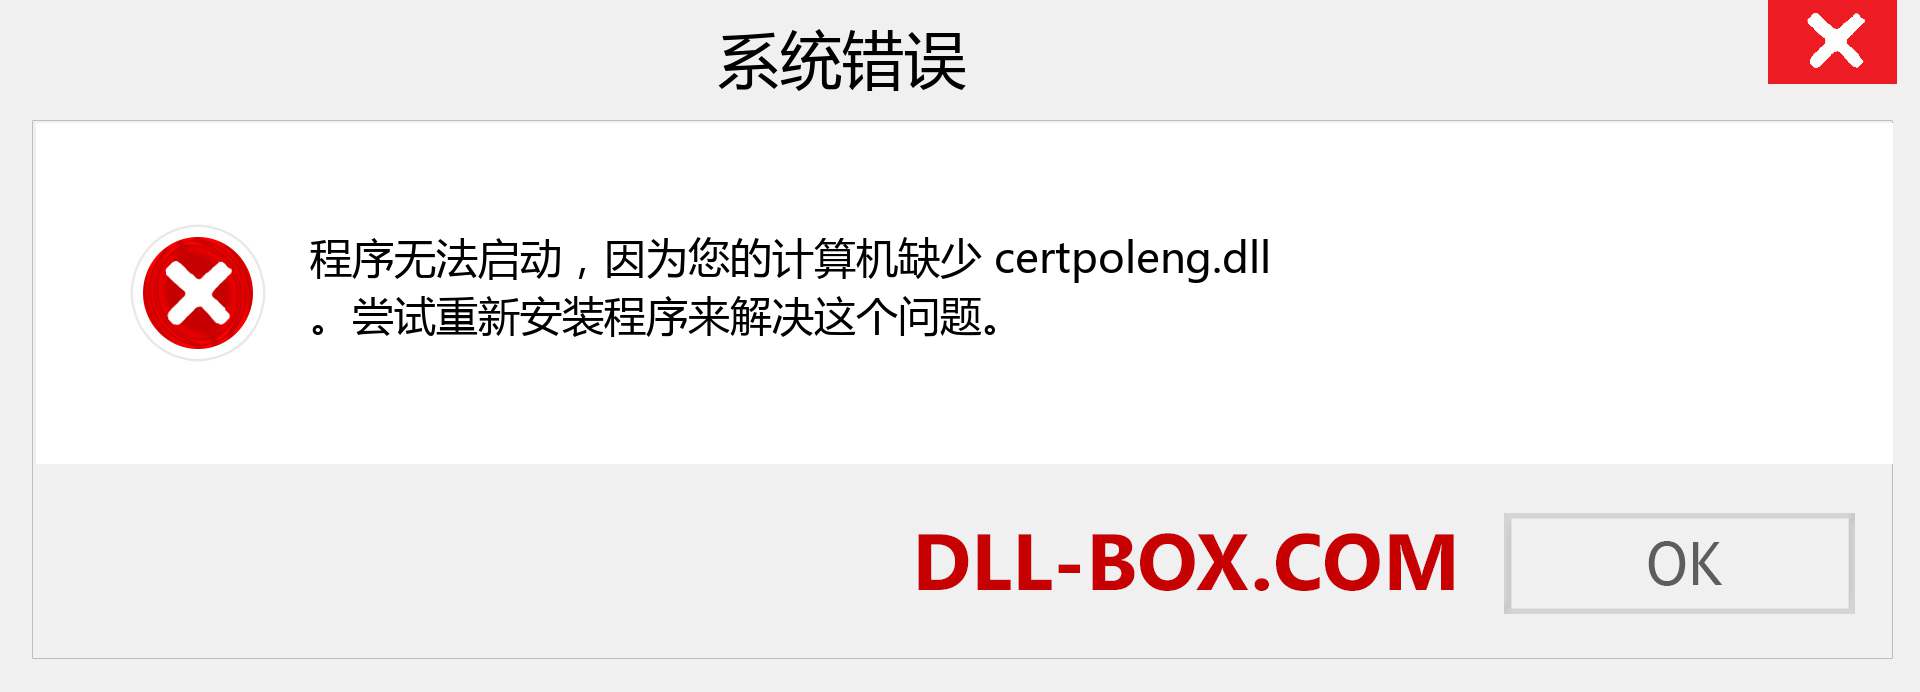 certpoleng.dll 文件丢失？。 适用于 Windows 7、8、10 的下载 - 修复 Windows、照片、图像上的 certpoleng dll 丢失错误